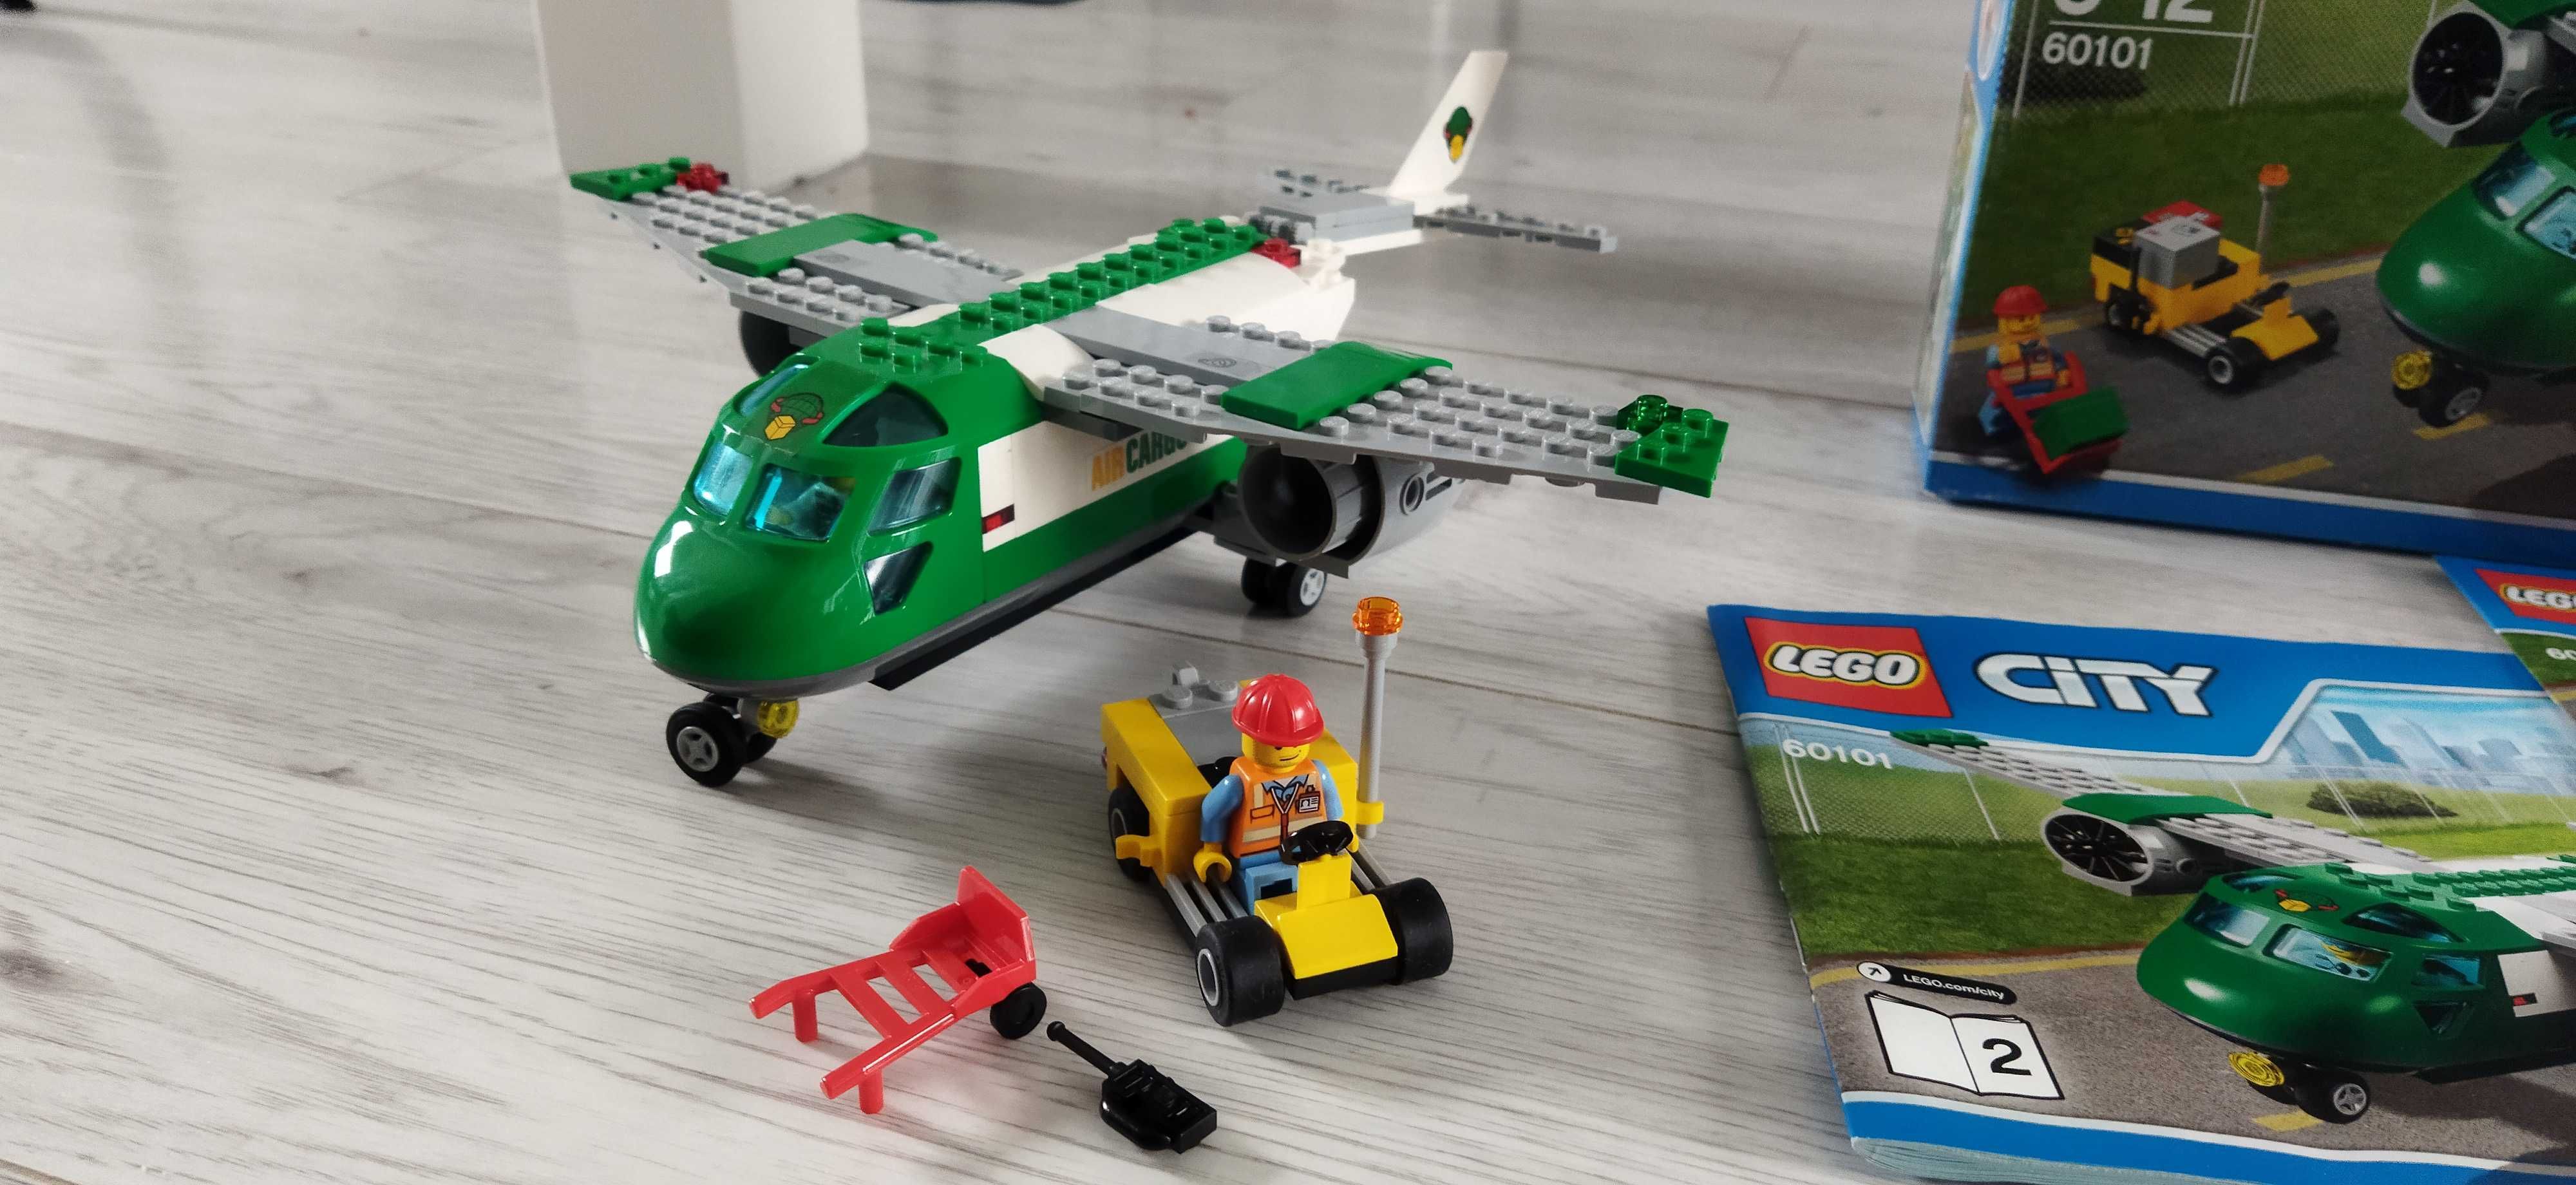 LEGO City 60101 Lotnisko samolot + instrukcja + opakowanie